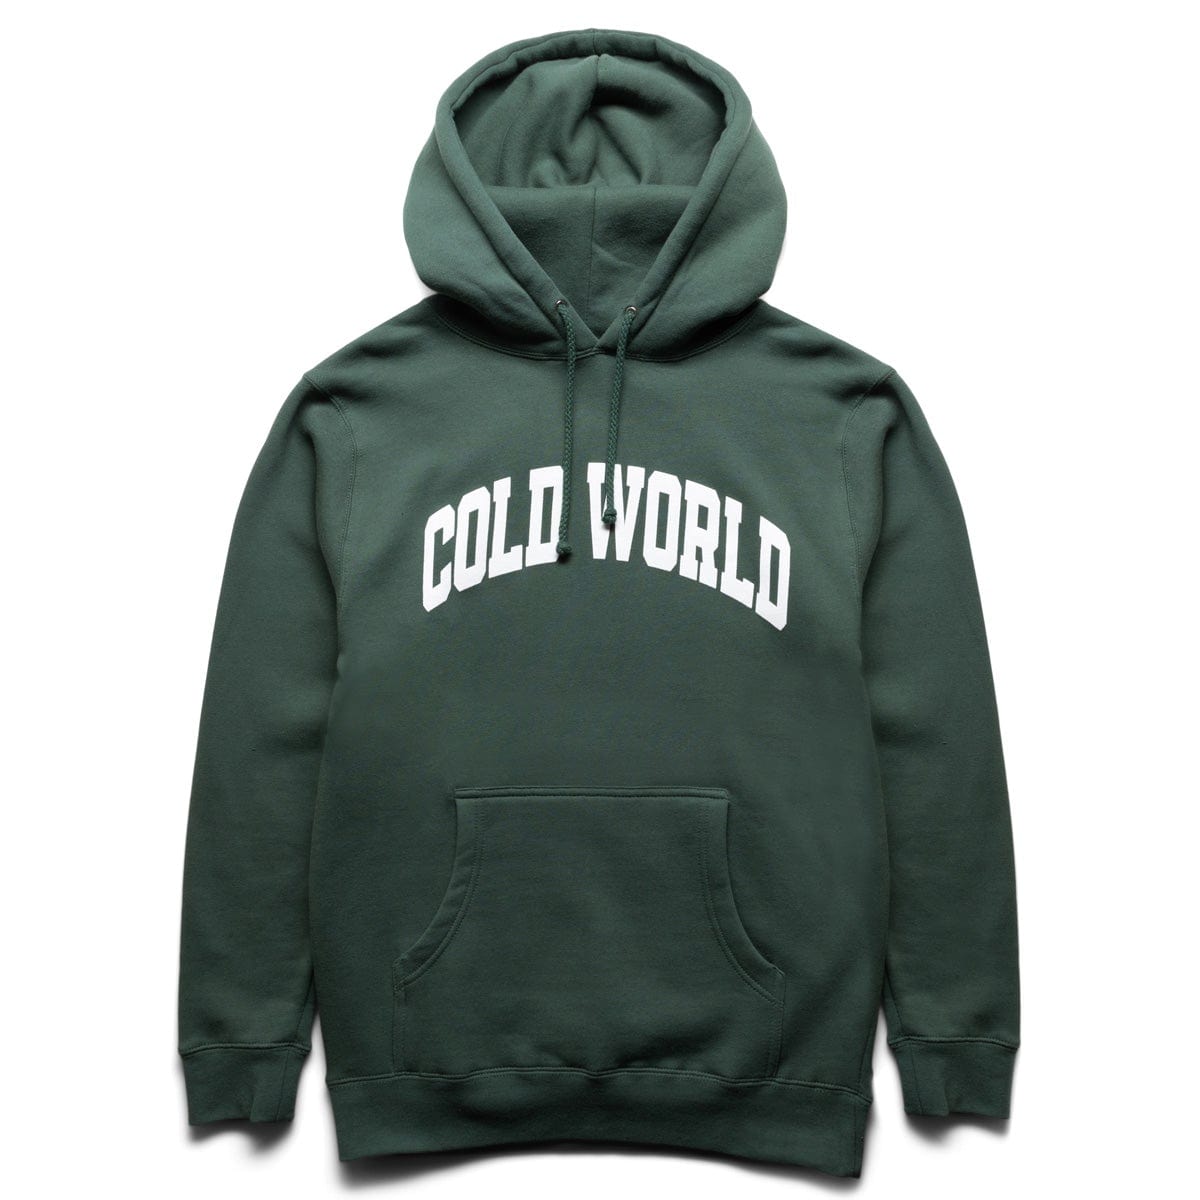 Cold World Frozen Goods Hoodies & Sweatshirts HAPPY TIGER HOODY